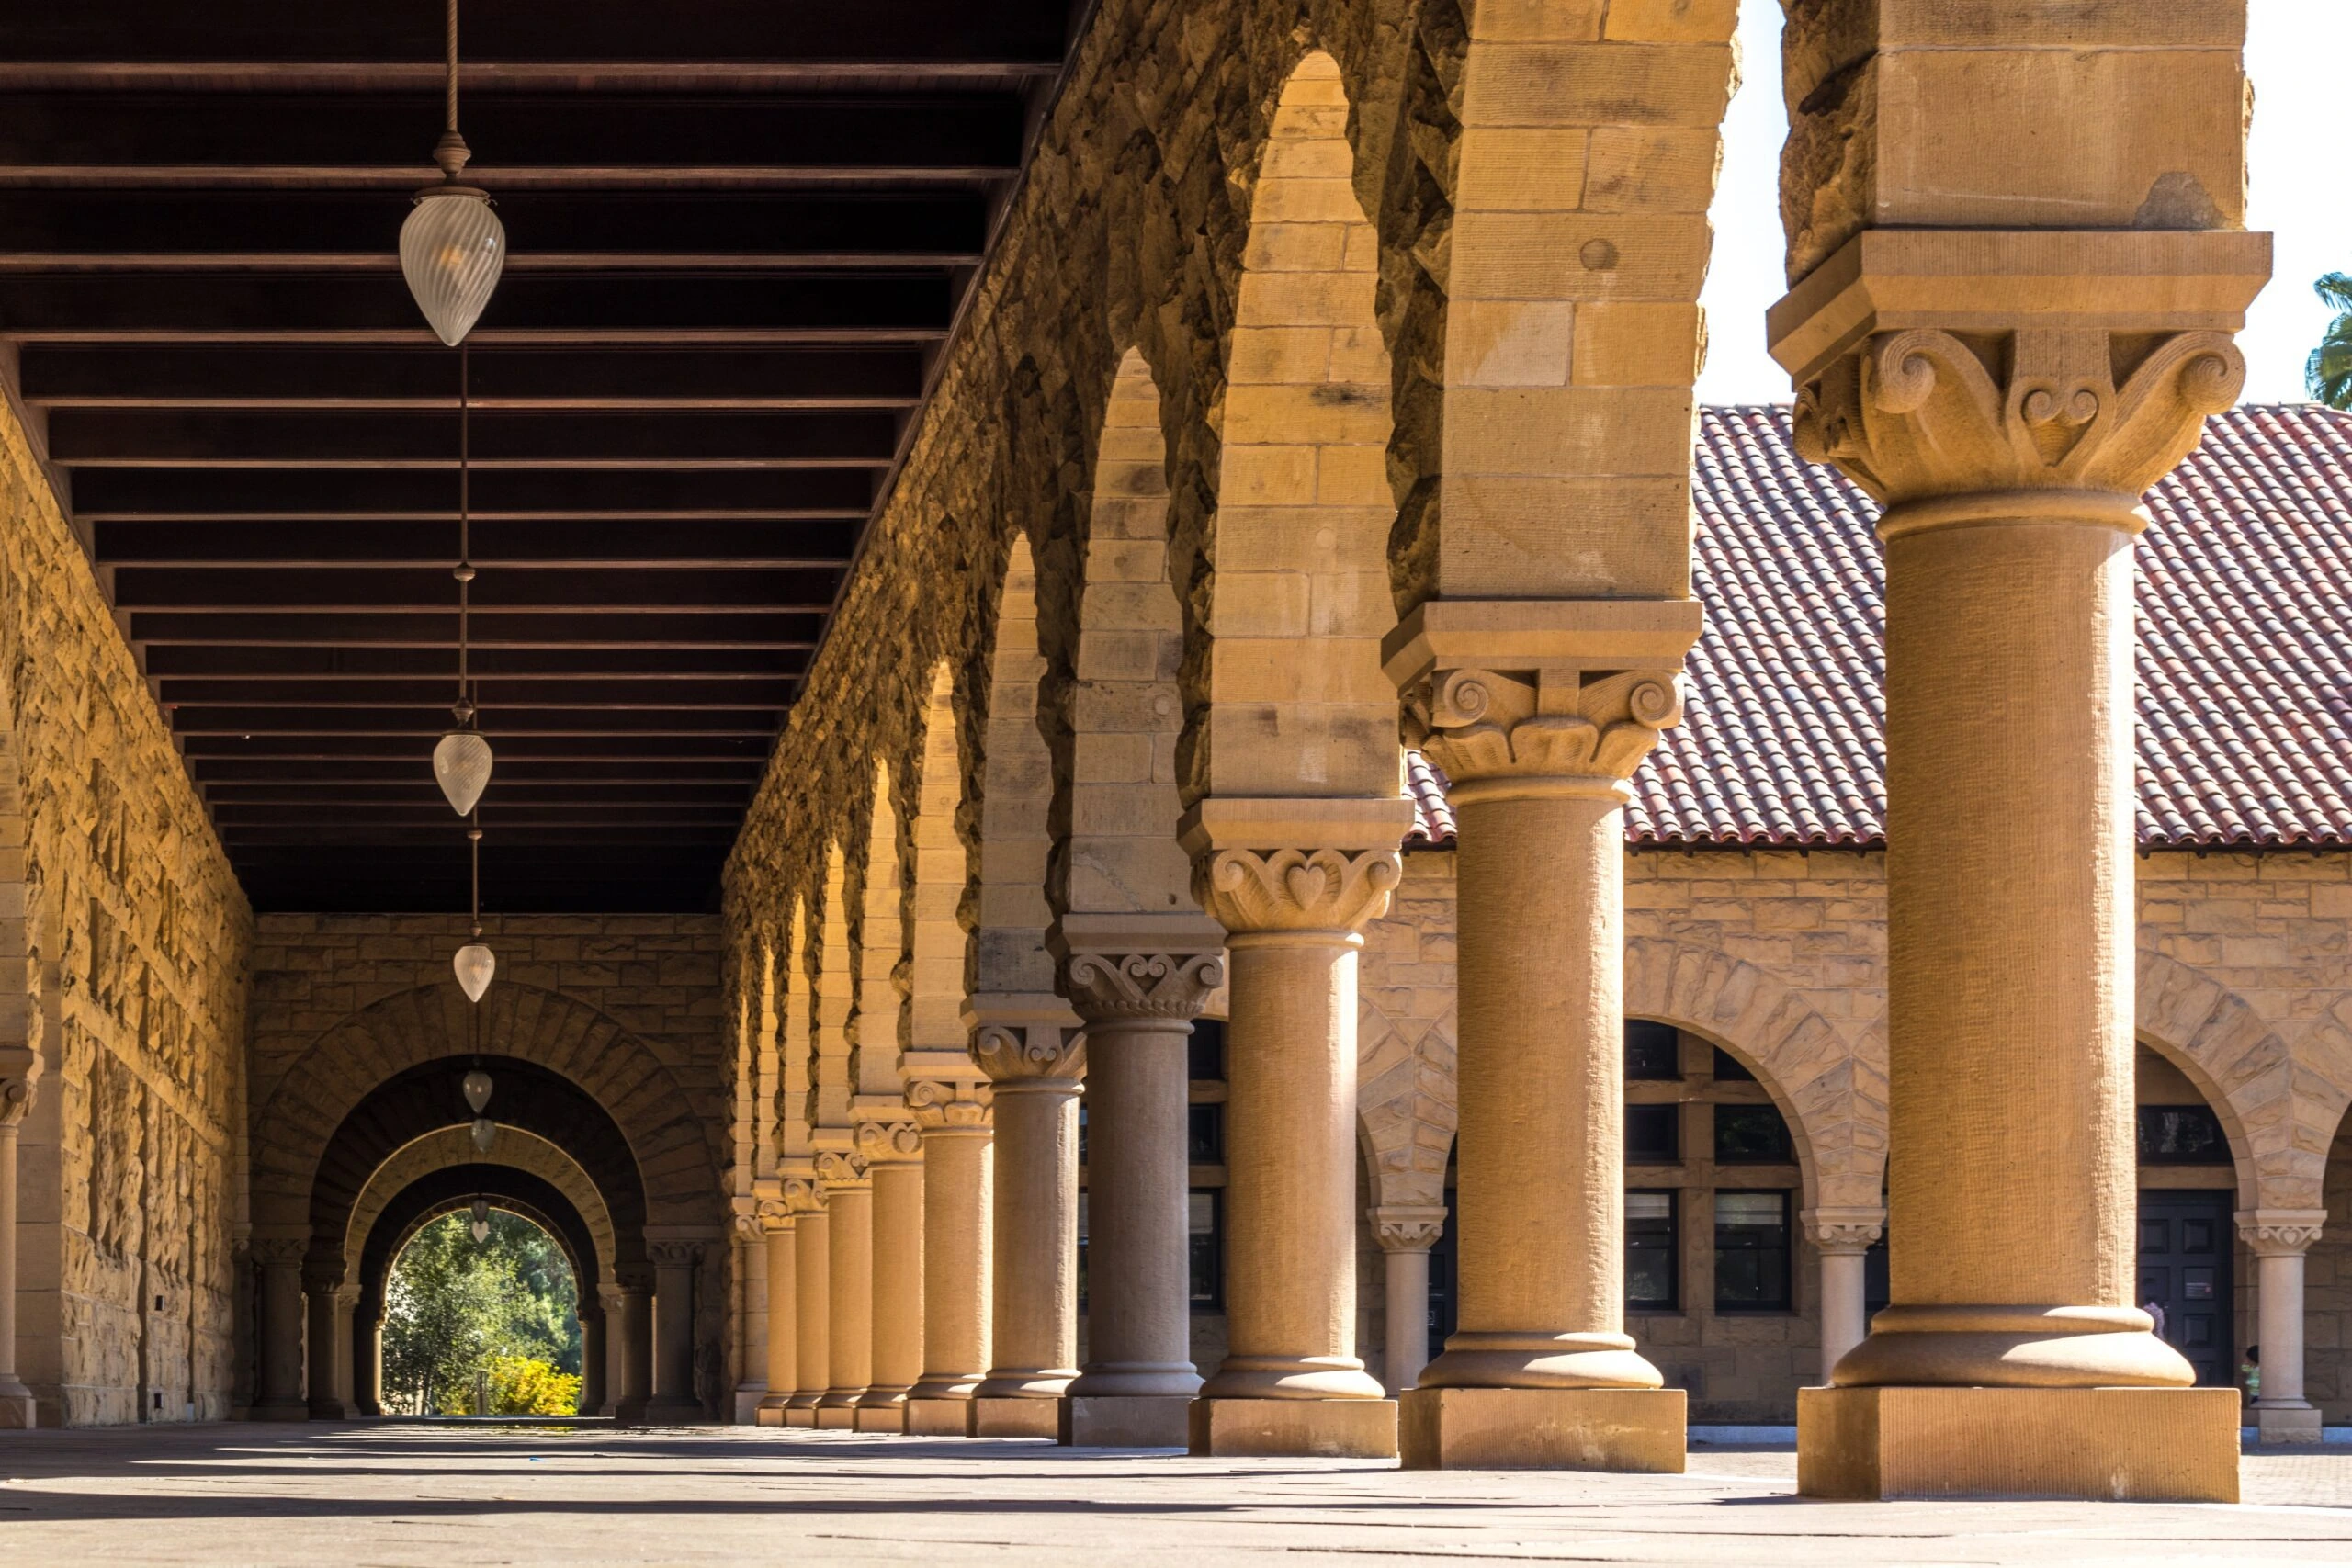 jason-leung-Stanford-Arches-unsplash-scaled